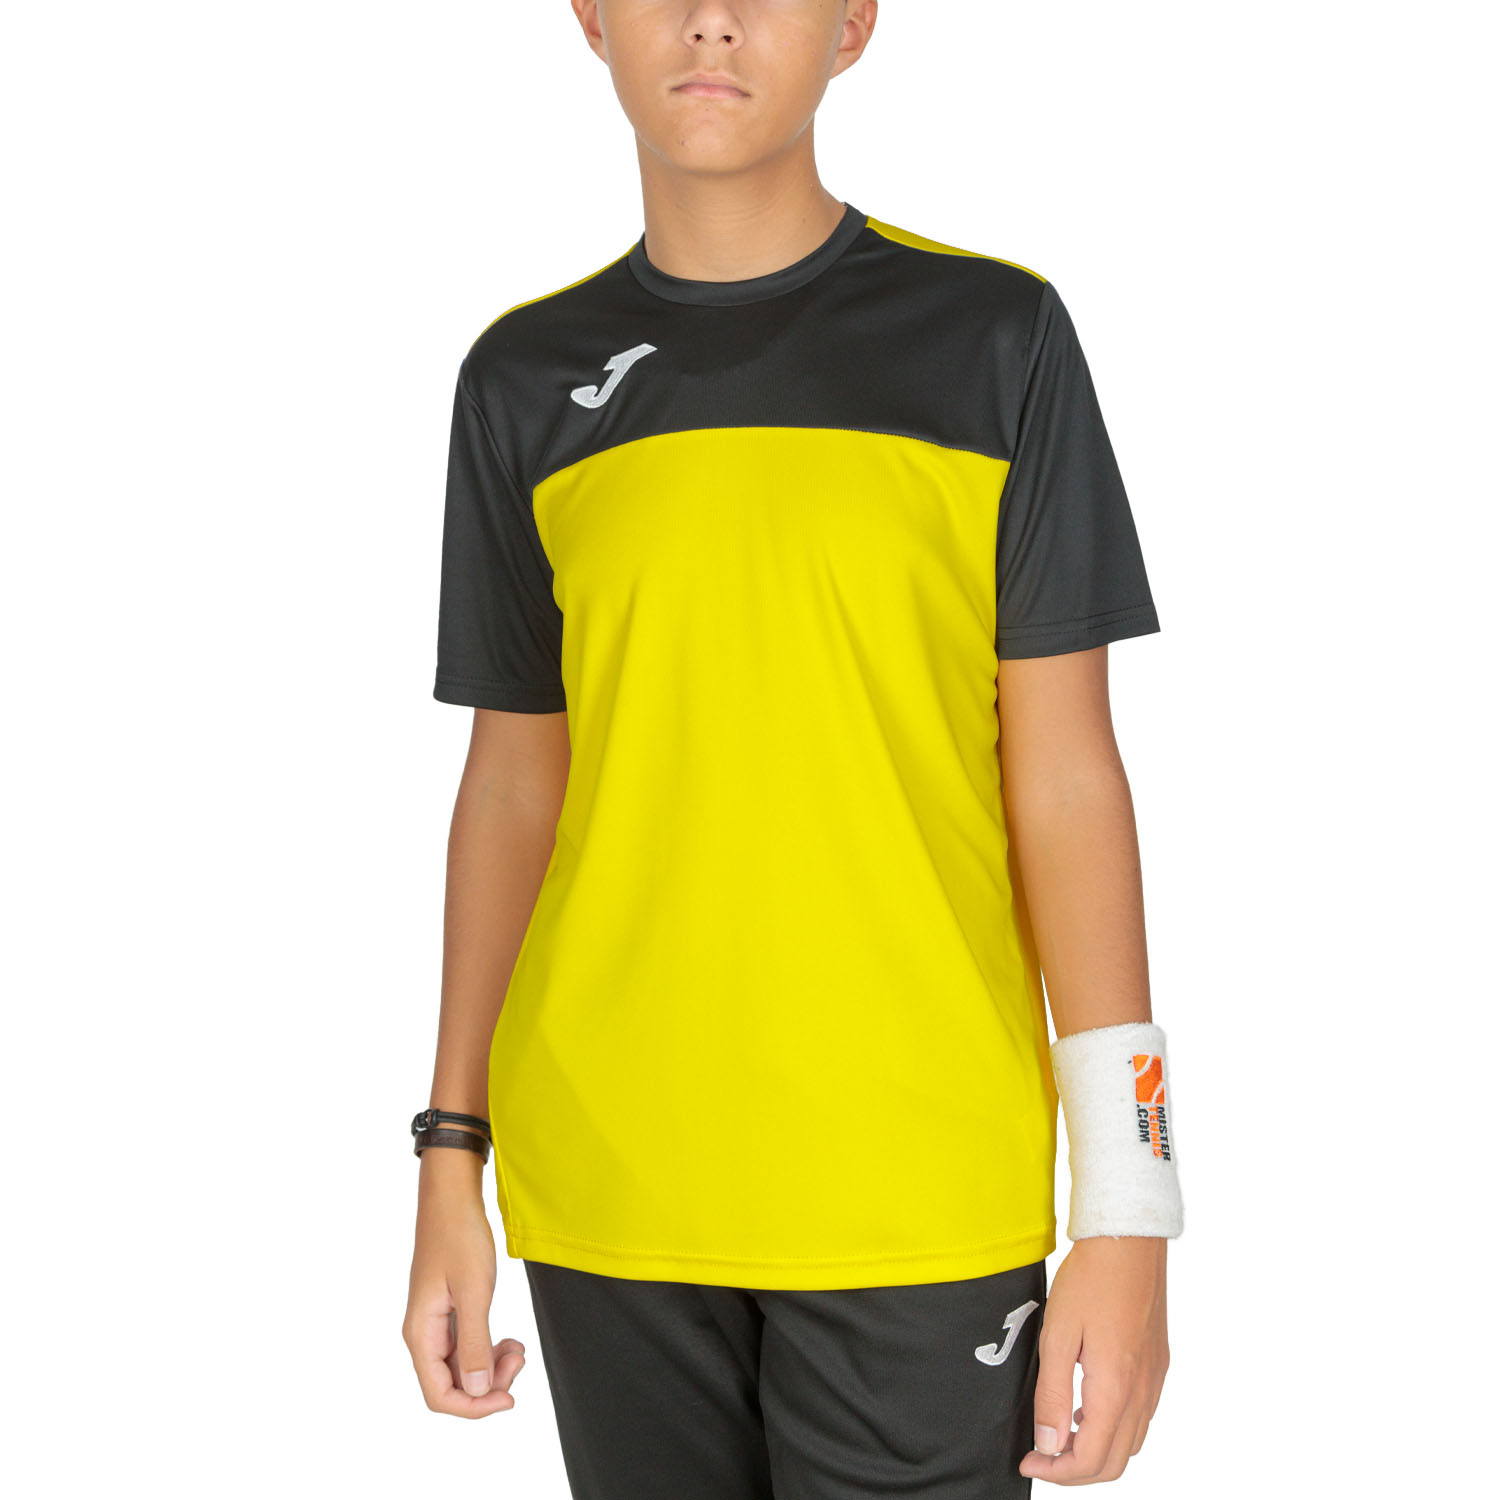 Winner Camiseta Niño - Yellow/Black